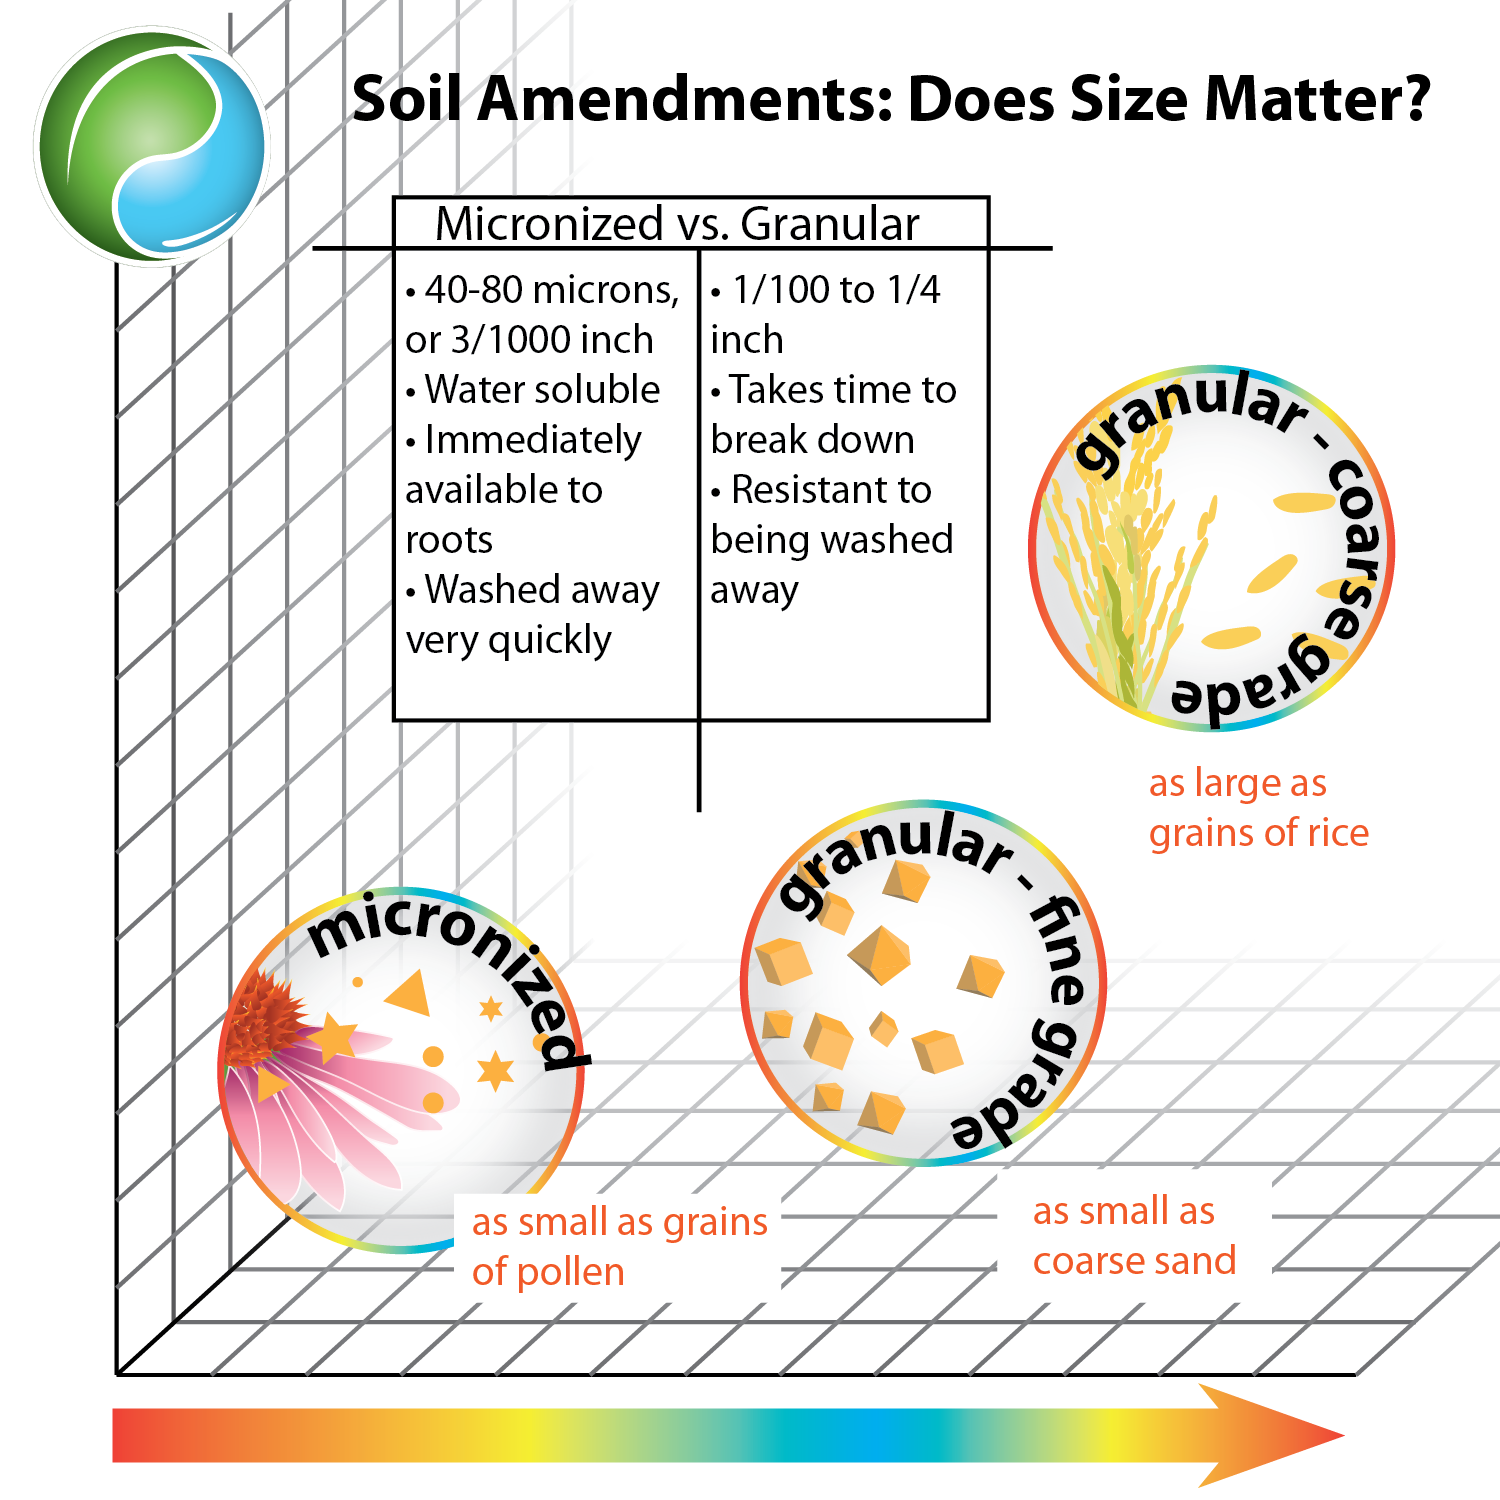 Soil amendment size